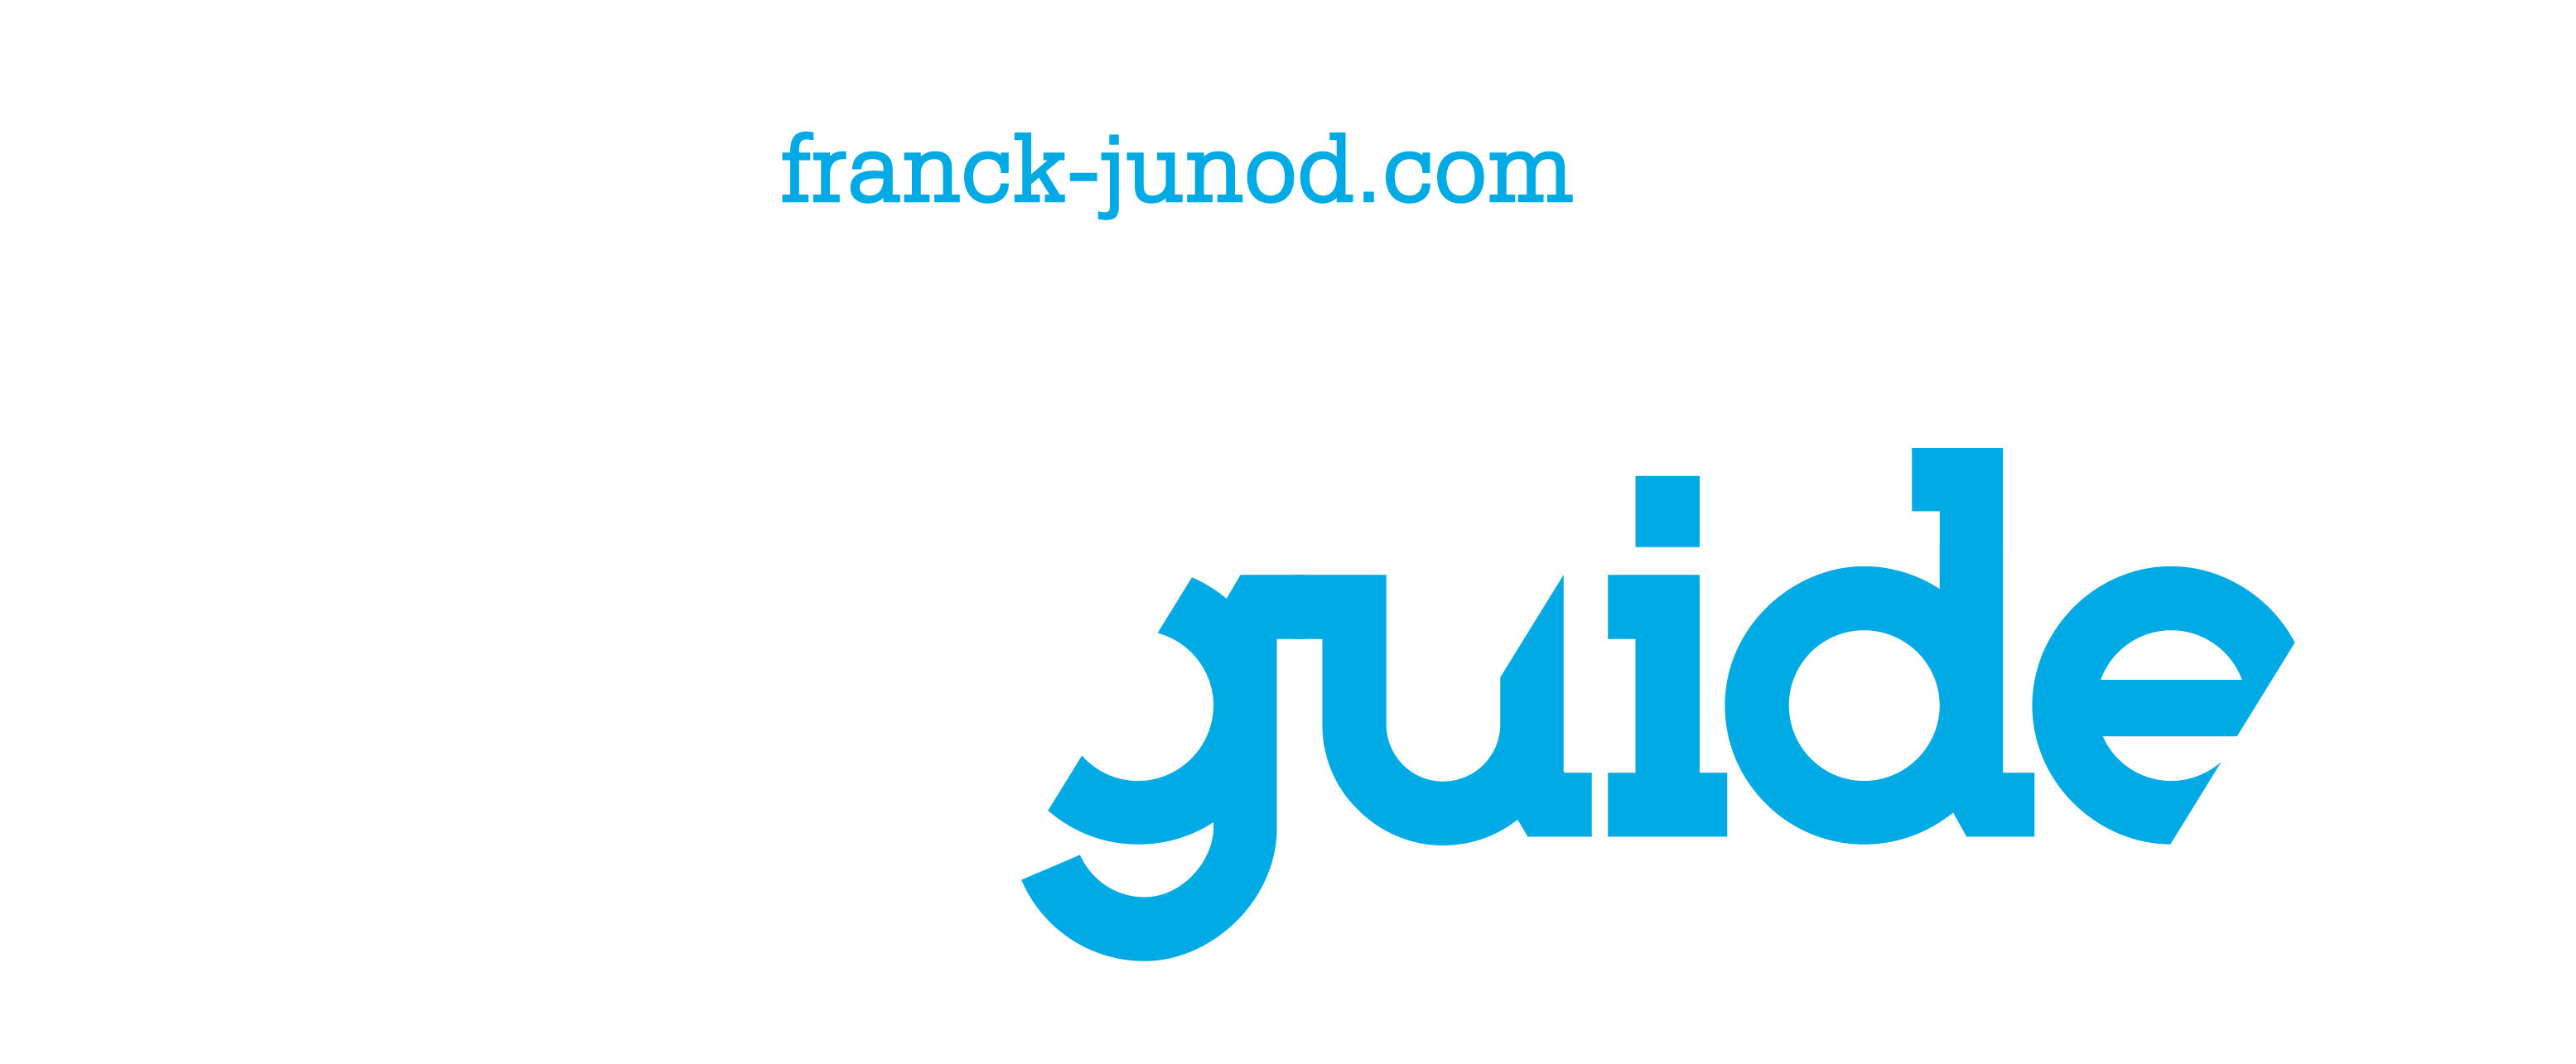 FRANCK JUNOD